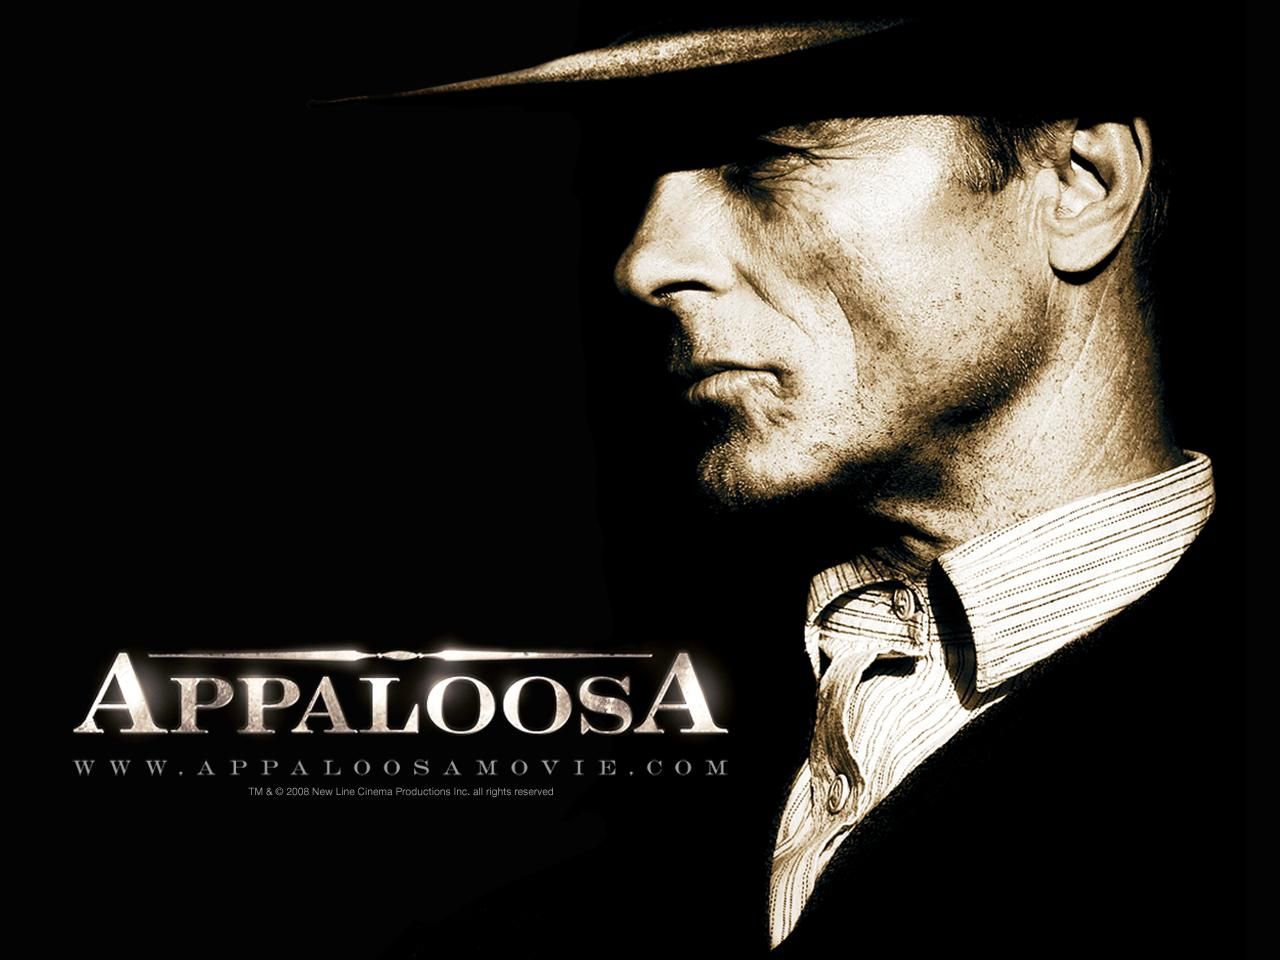 Фильм Аппалуза | Appaloosa - лучшие обои для рабочего стола